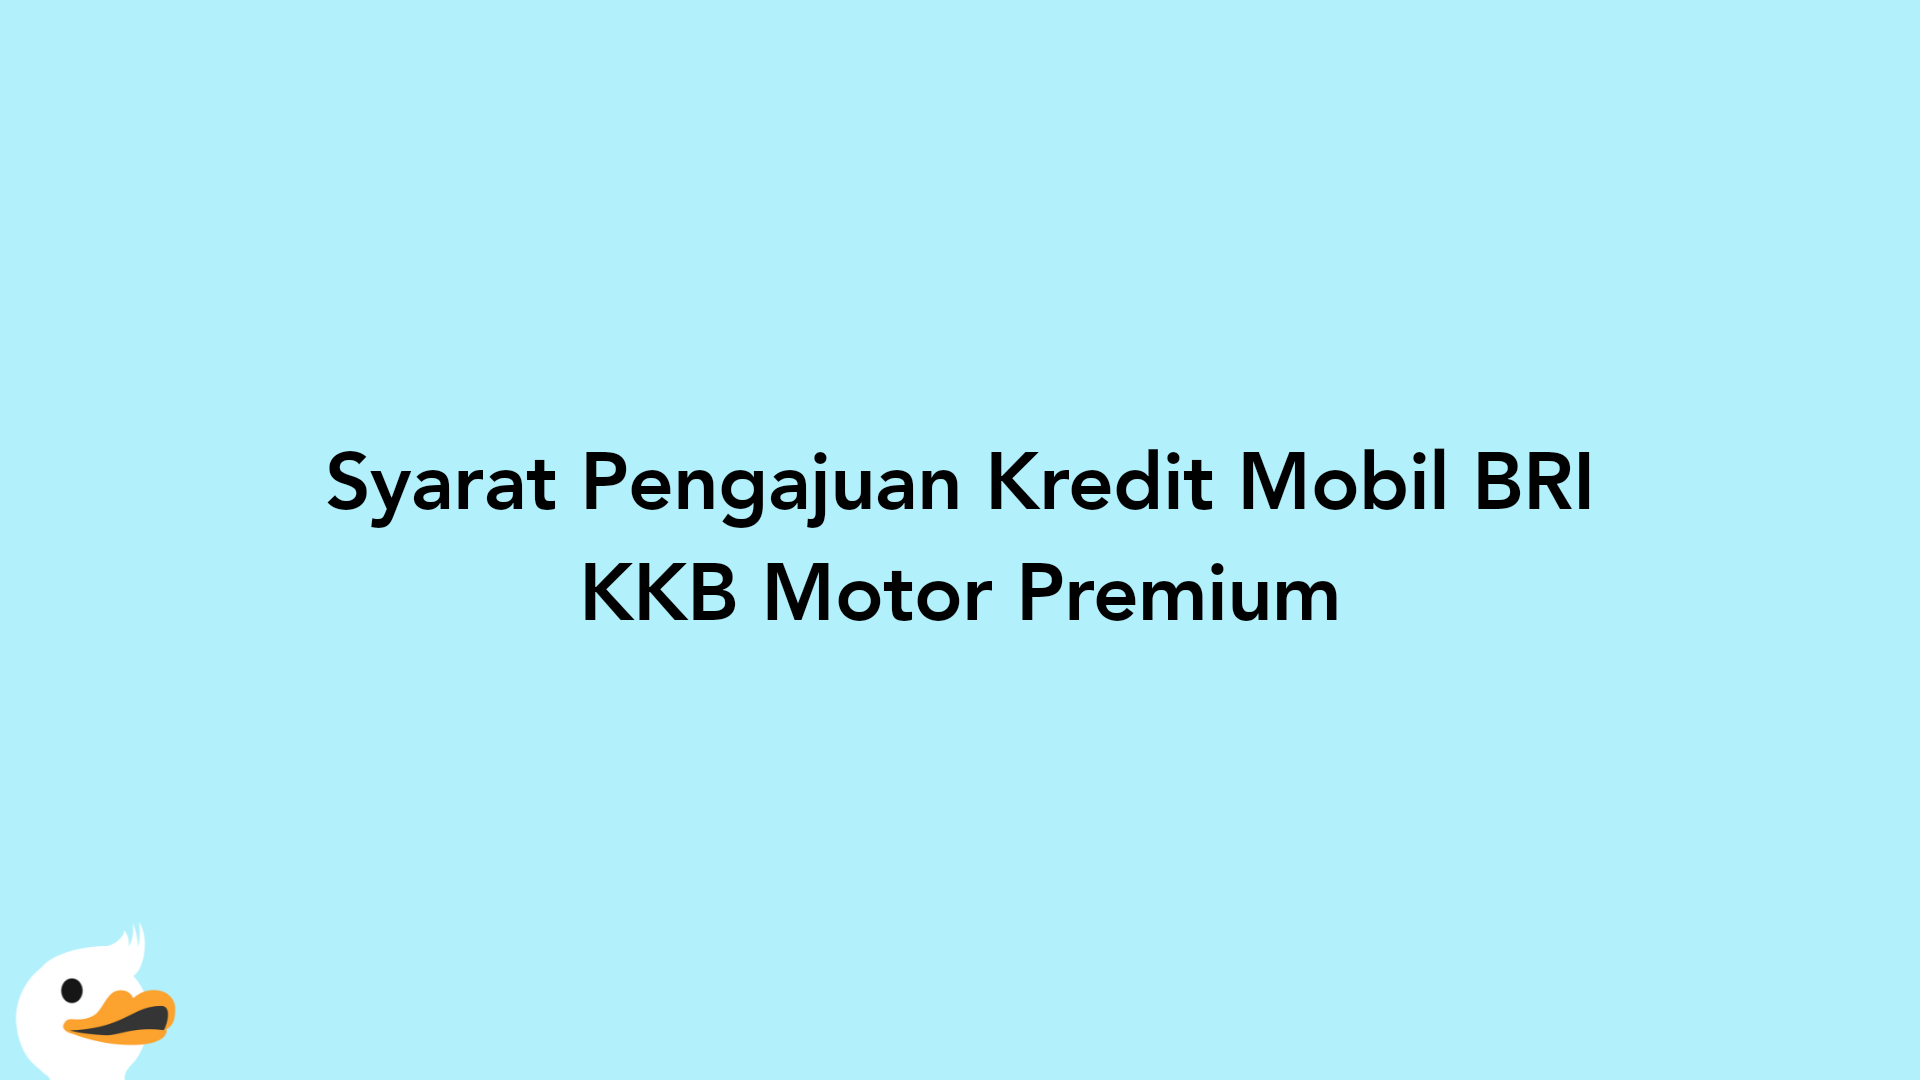 Syarat Pengajuan Kredit Mobil BRI KKB Motor Premium